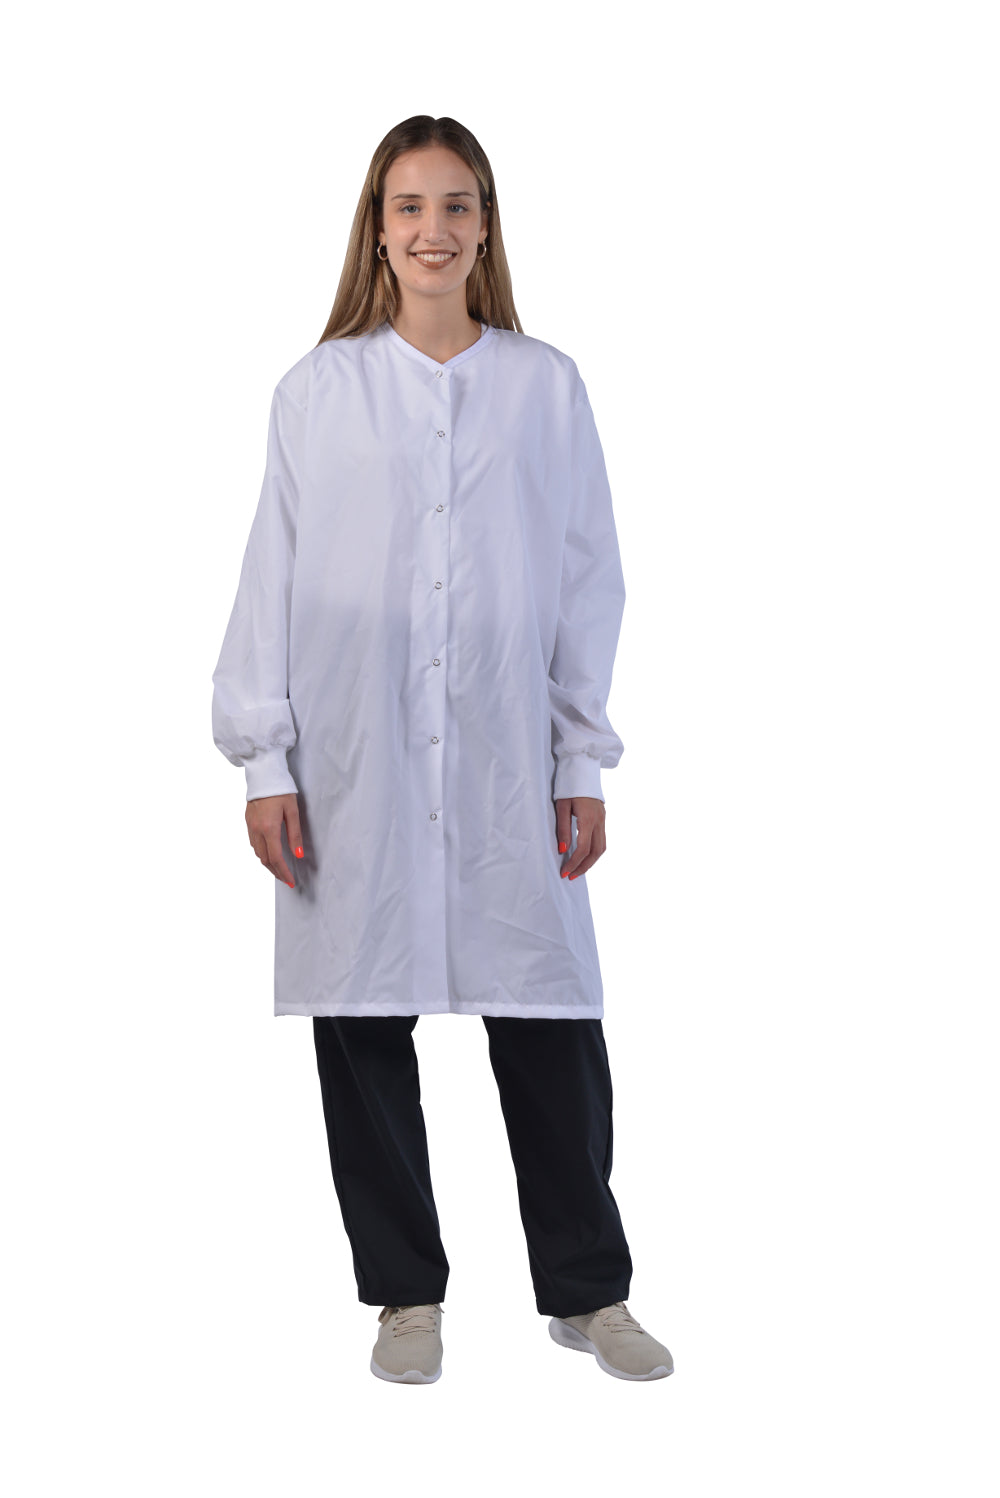 White - Avida Lab Coats Lab Coat (AAMI Level I Fabric)